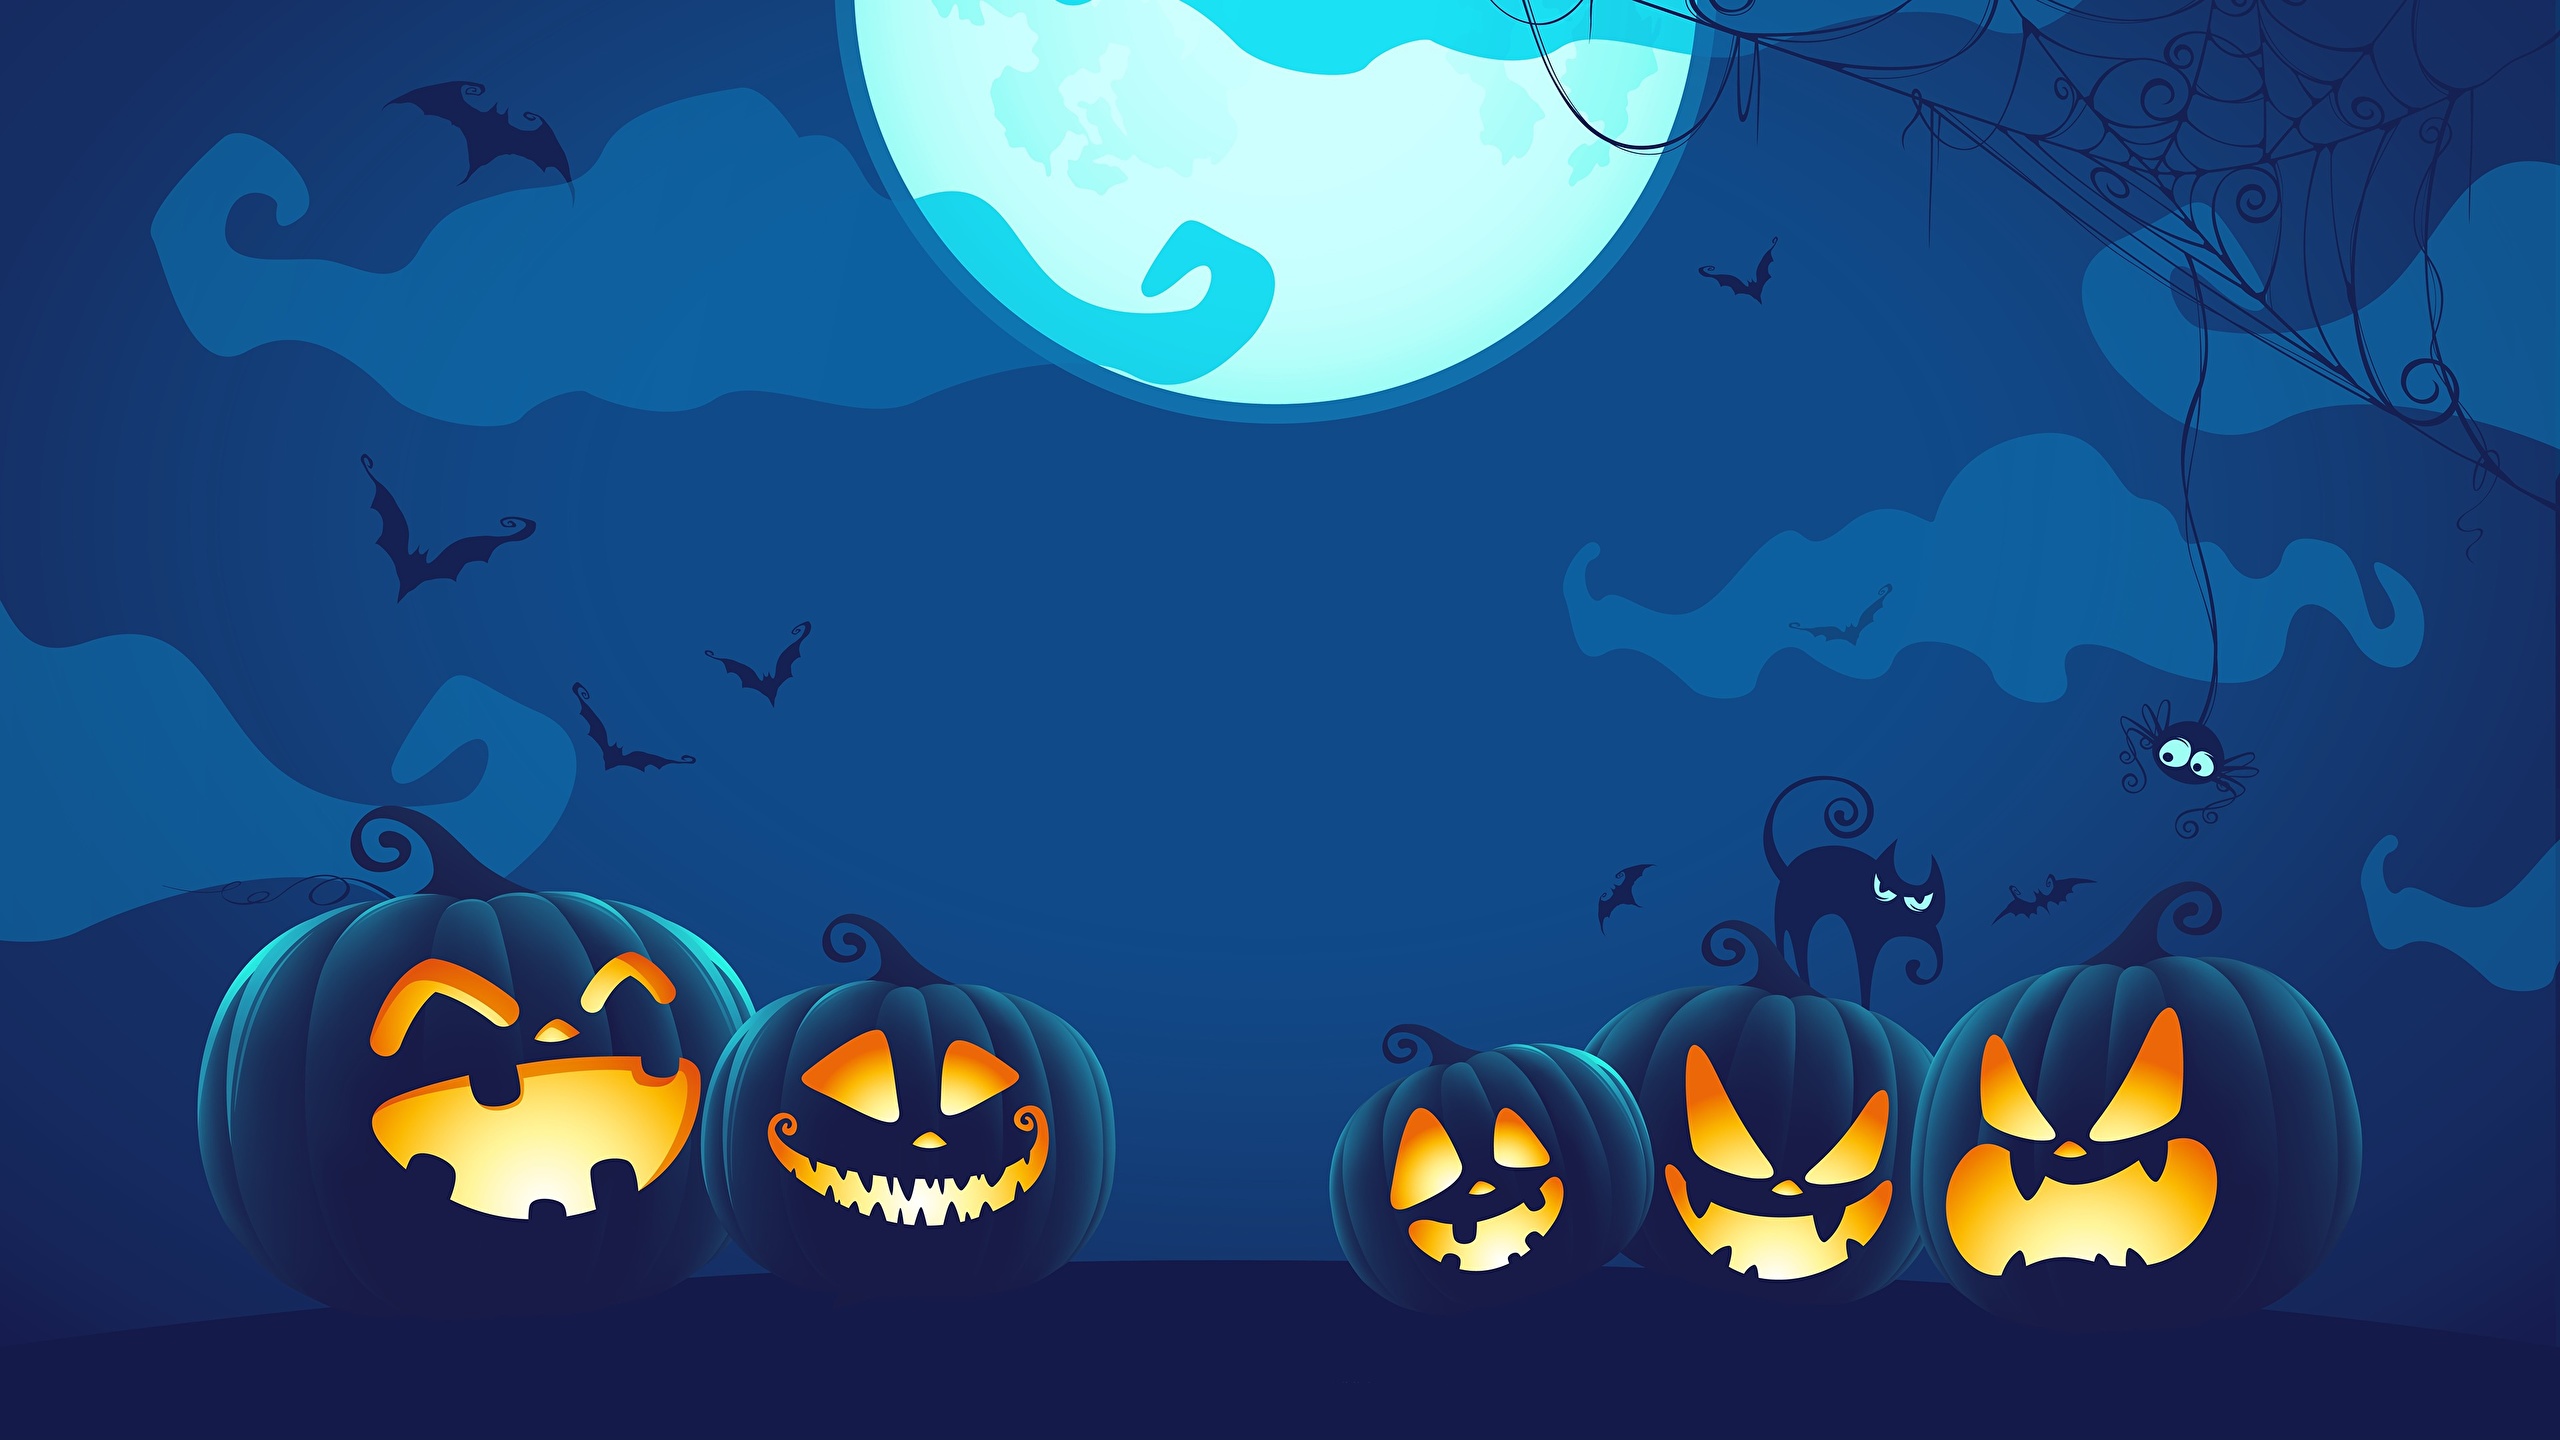 Wallpaper Pumpkin Halloween Moon Night Vector Graphics 2560x1440